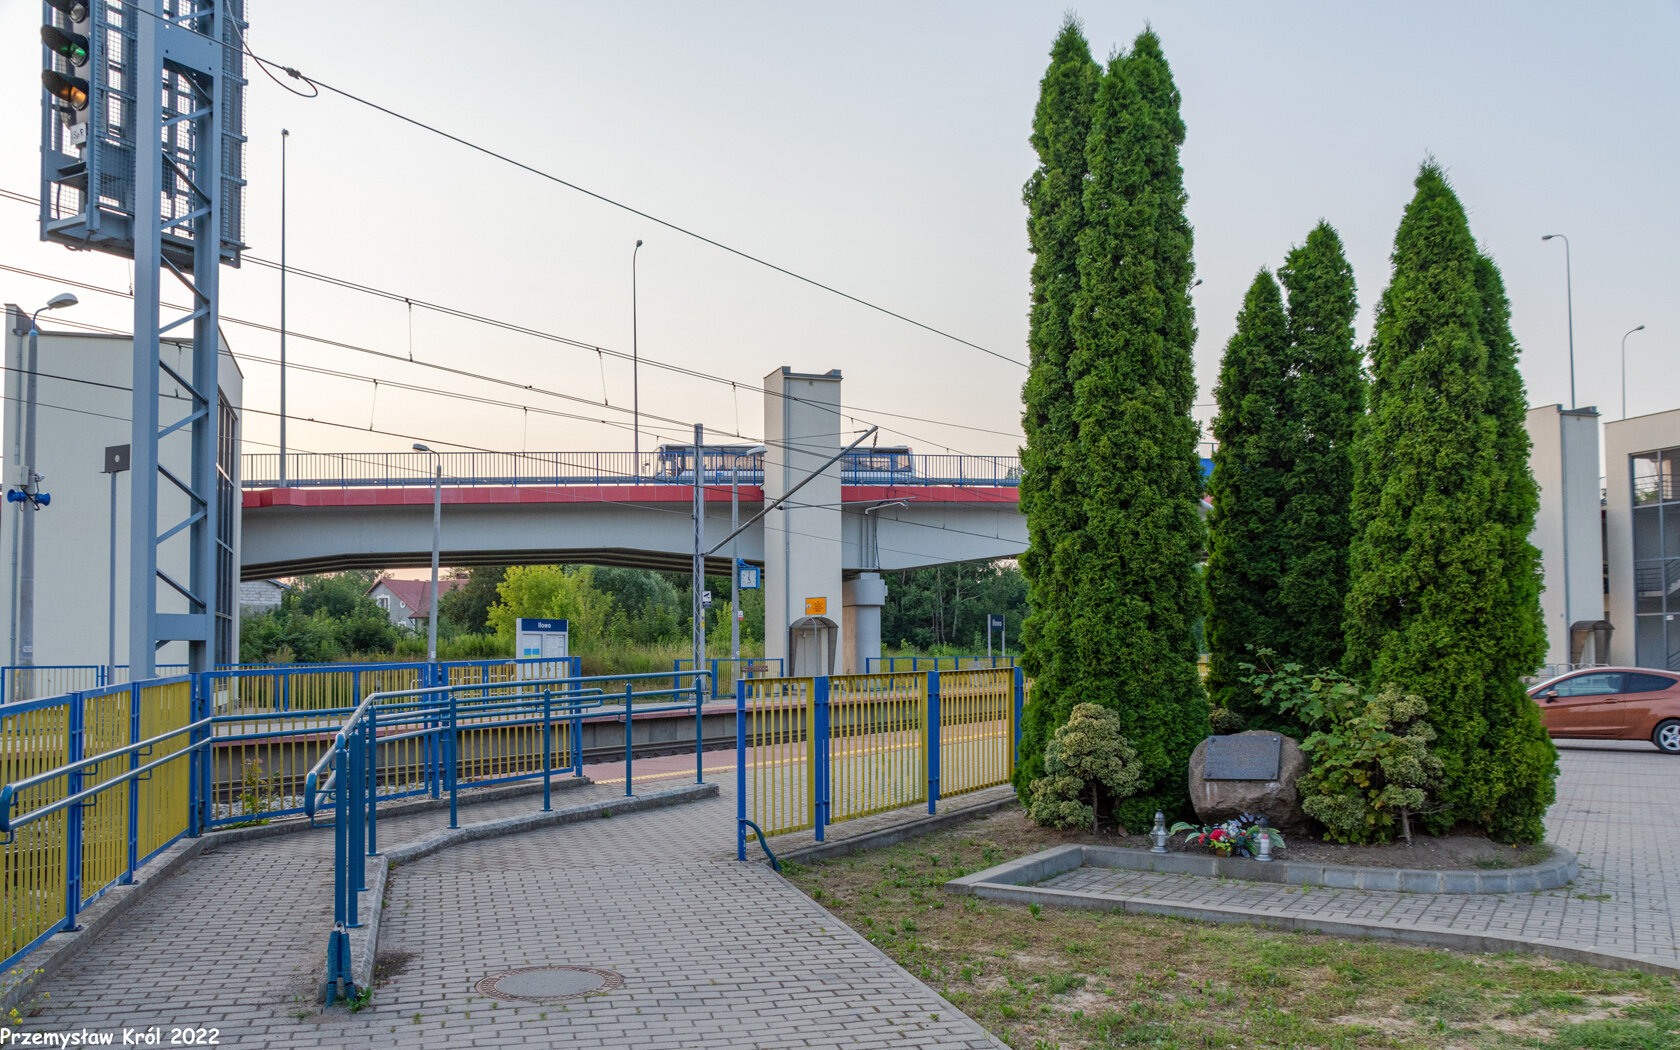 Stacja Iłowo